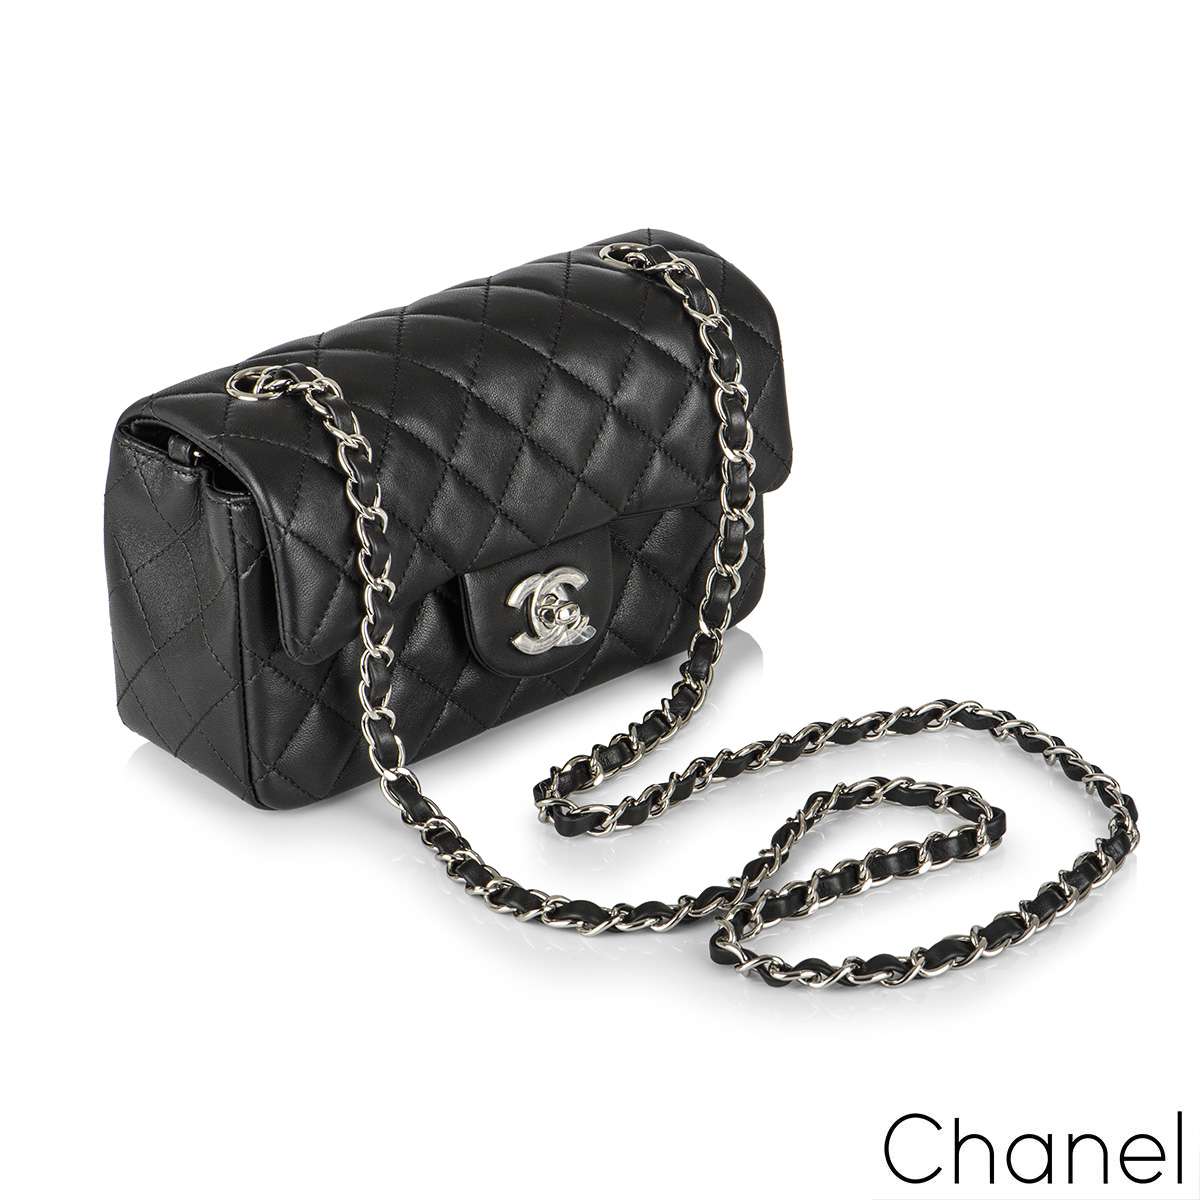 Chanel Black Lambskin Classic Mini Flap Bag